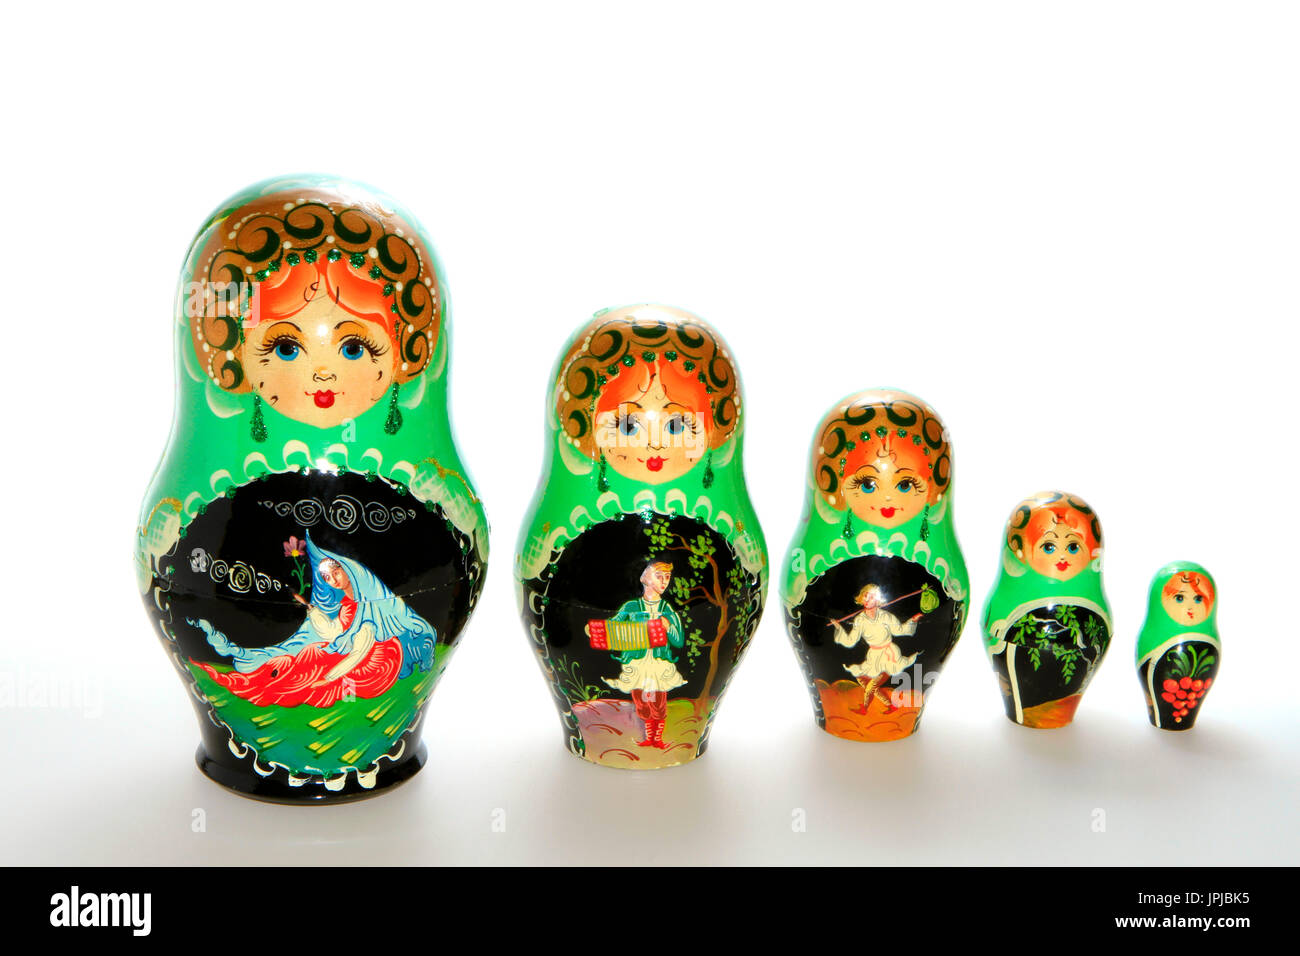 Poupées matriochka russe typique, souvenir de Russie Banque D'Images